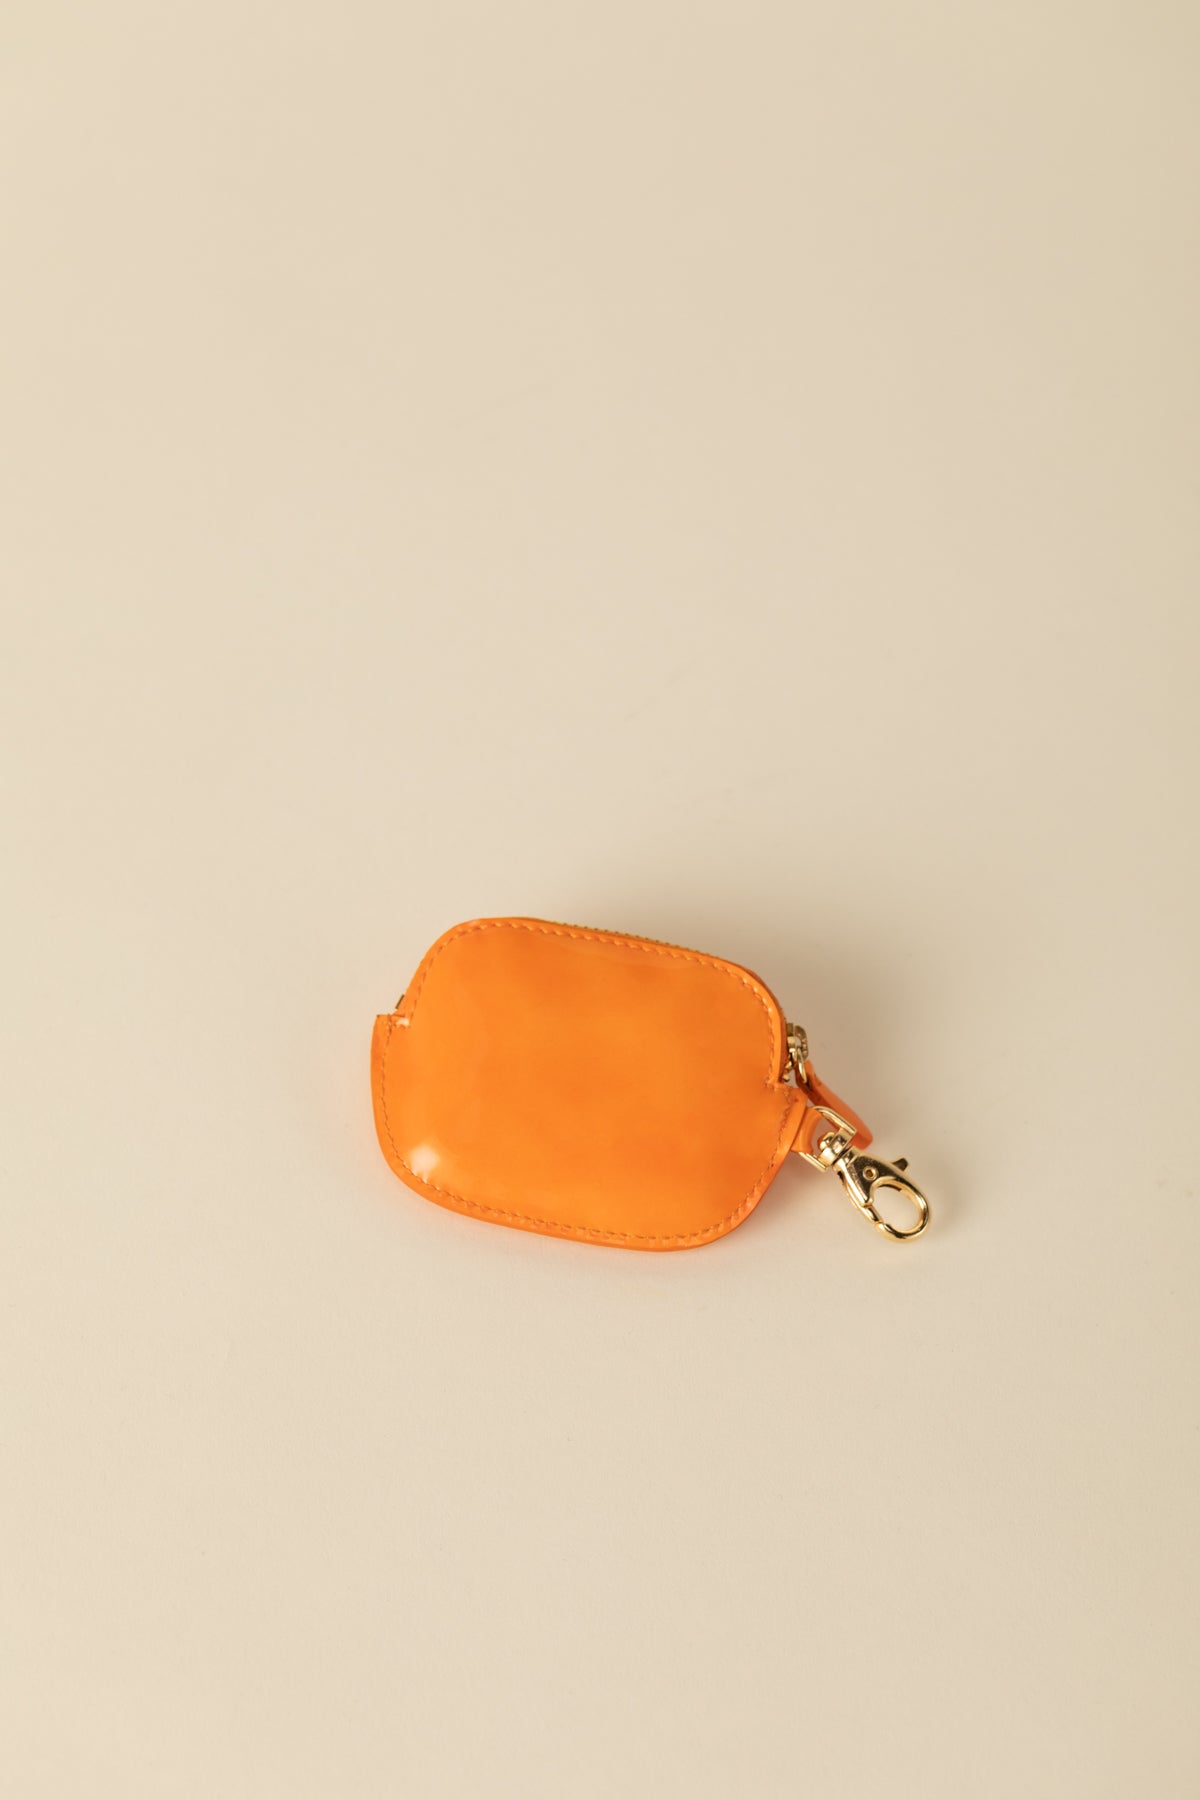 Porte monnaie Ziggy mousqueton orange vernis